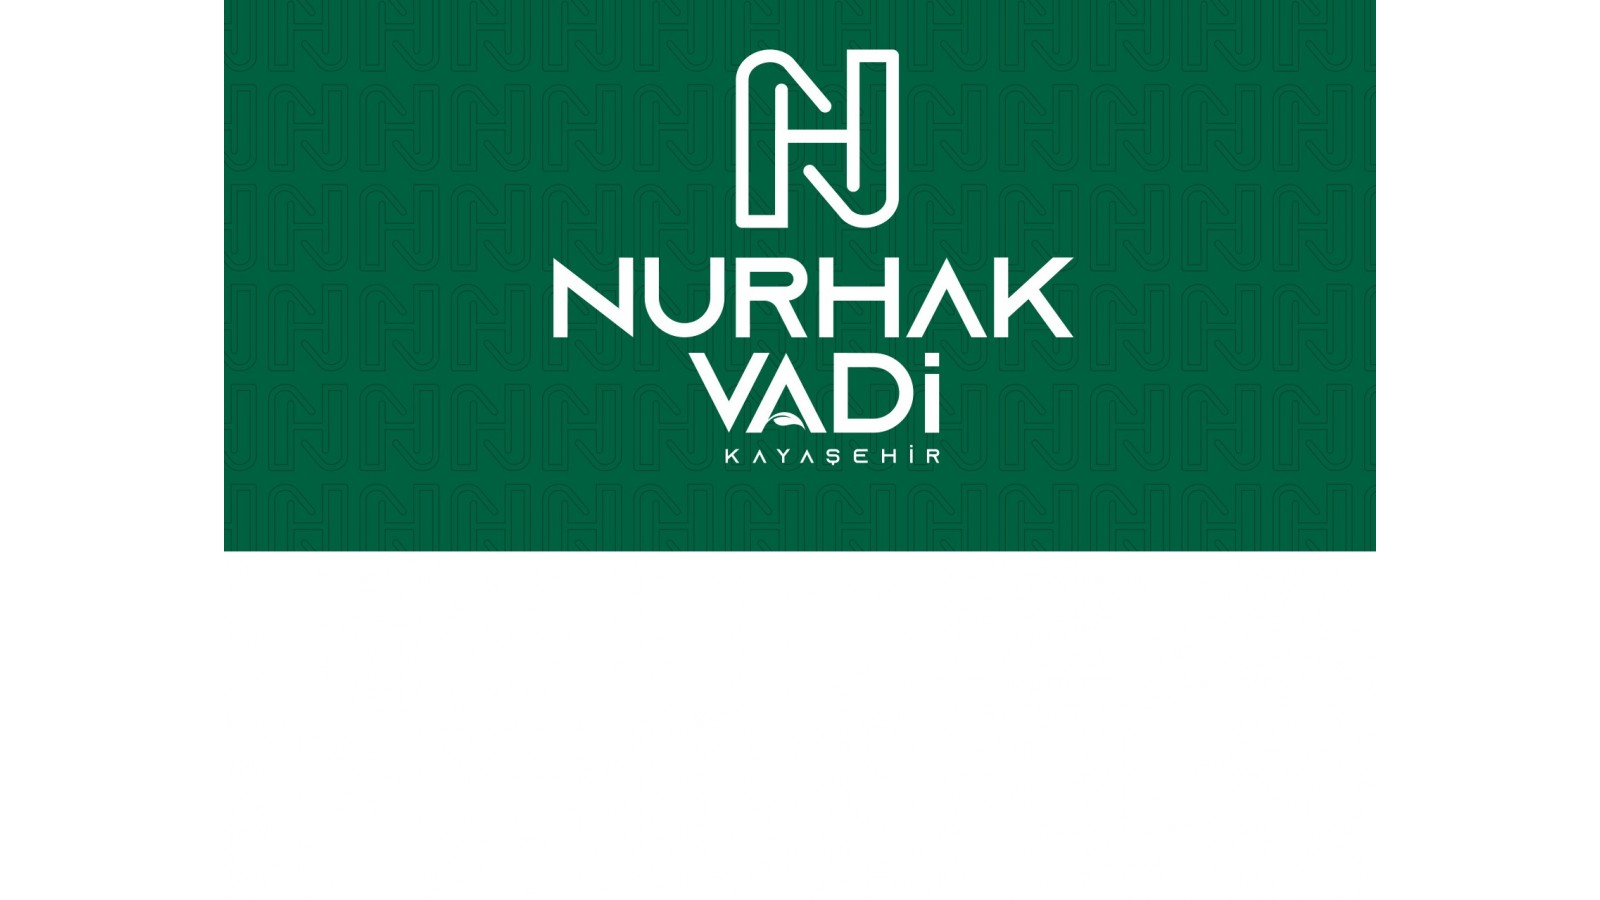 NurHak Vadi Kayaşehir